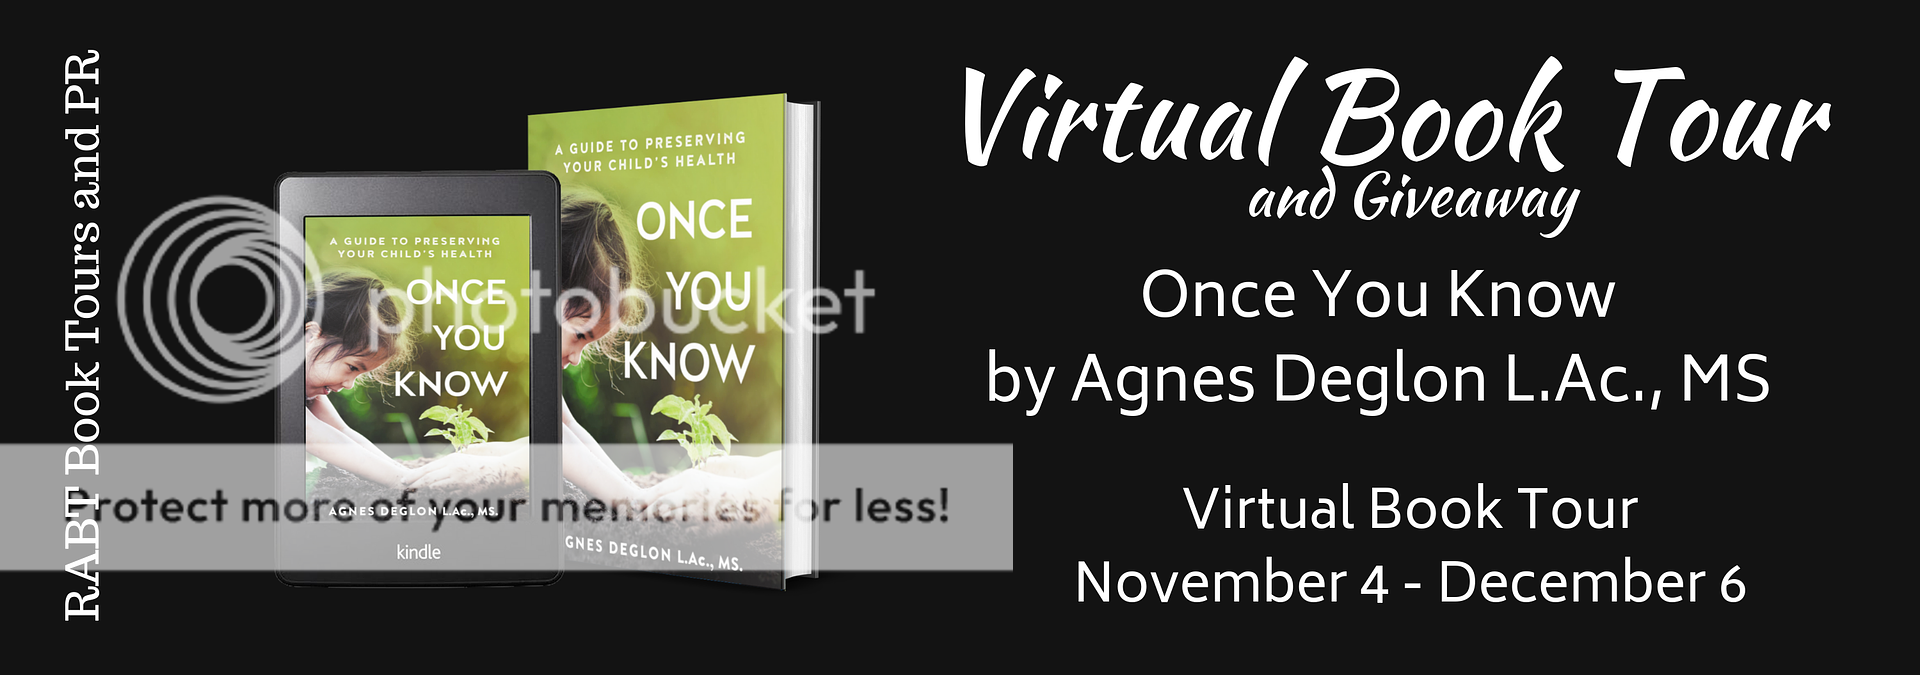 Virtual Book Tour: Once You Know by Agnes Deglon L.Ac., MS. #blogtour #nonfiction #giveaway @RABTBookTours @agnesdeglon